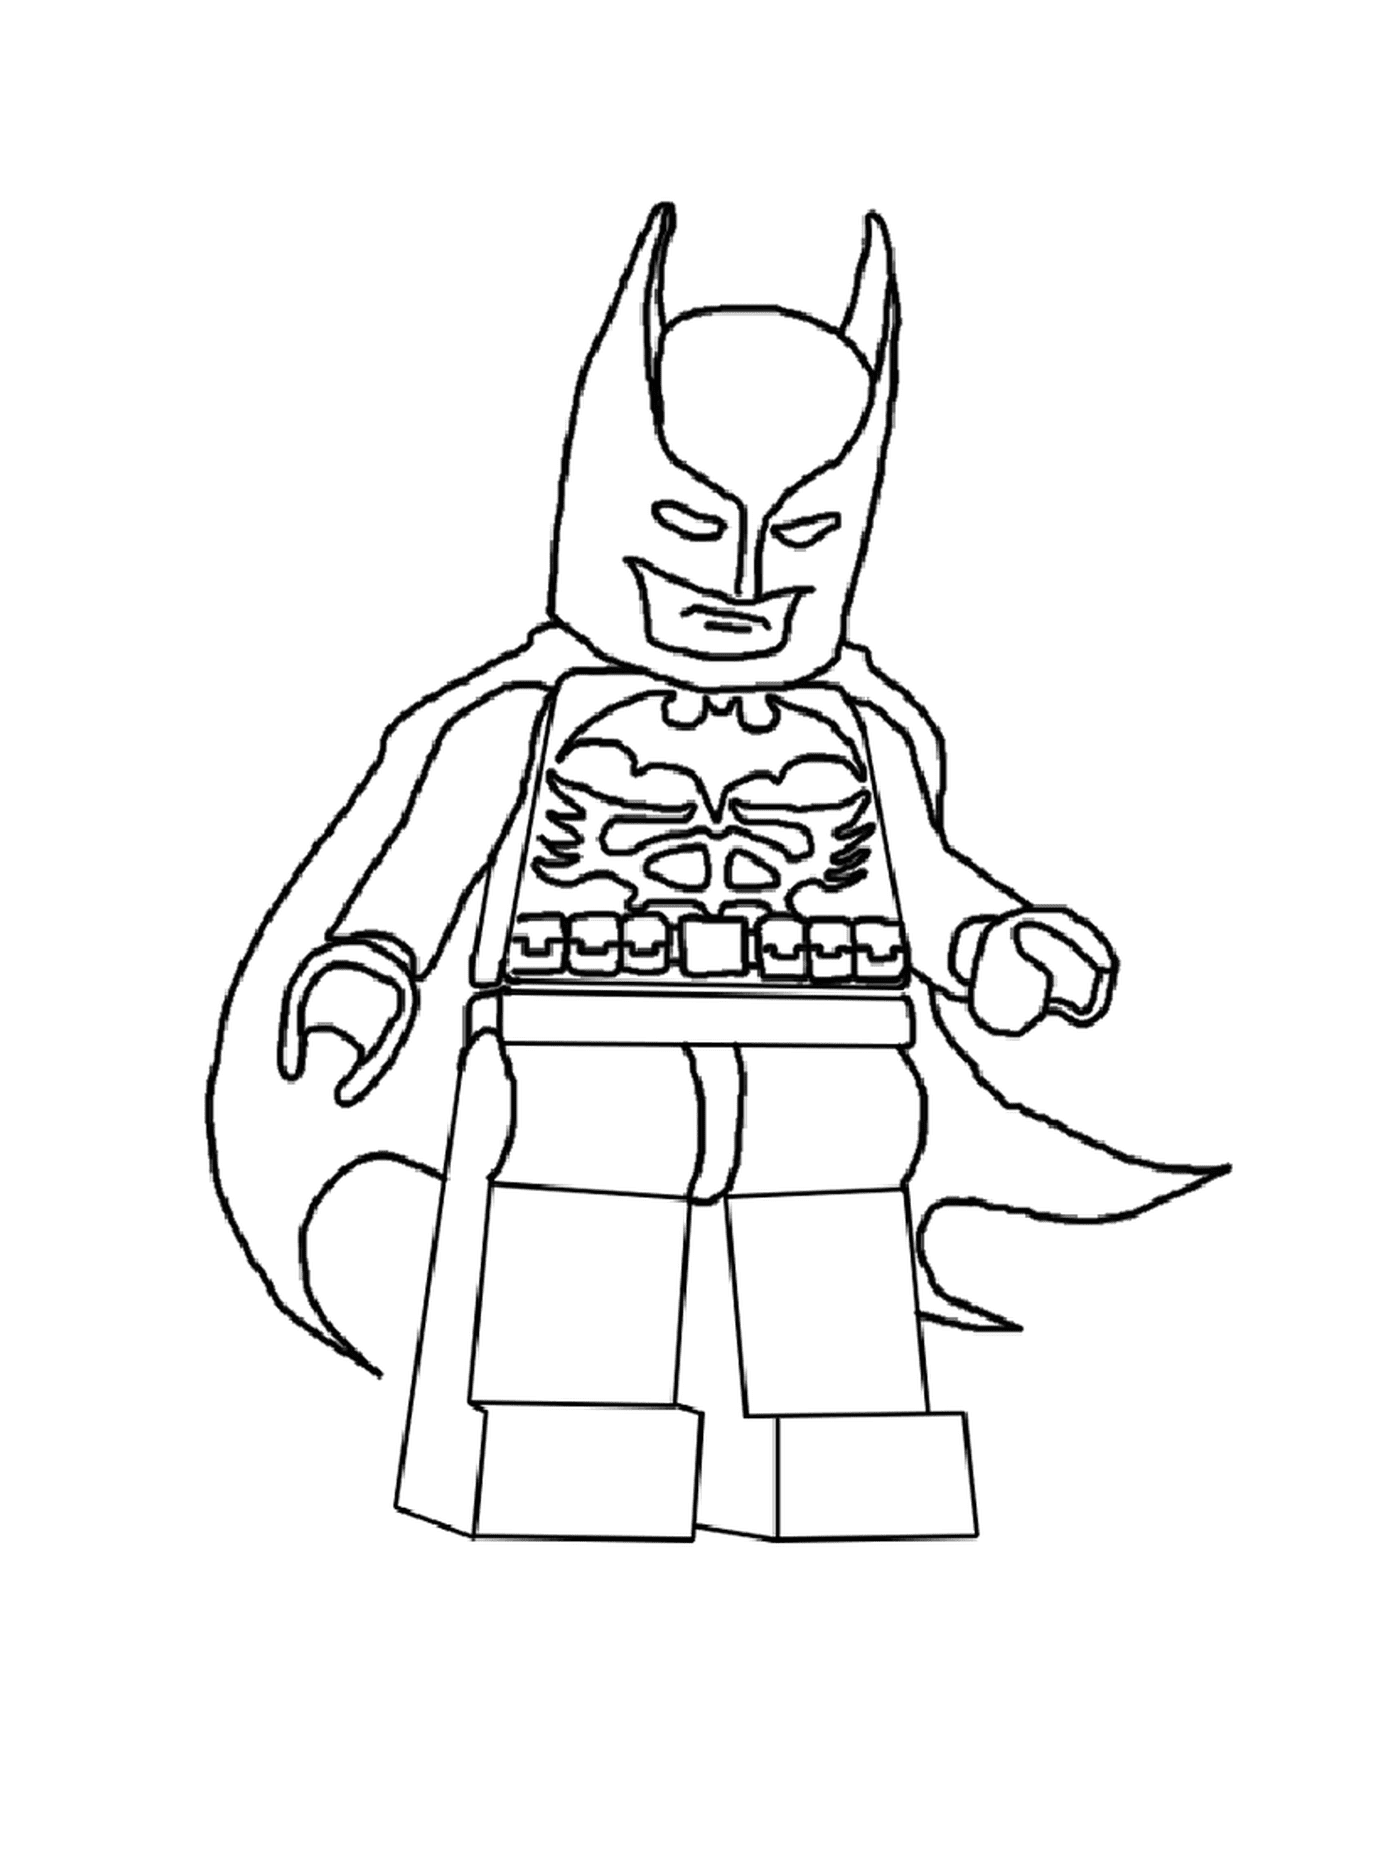  Lego Batman do filme de 2017 